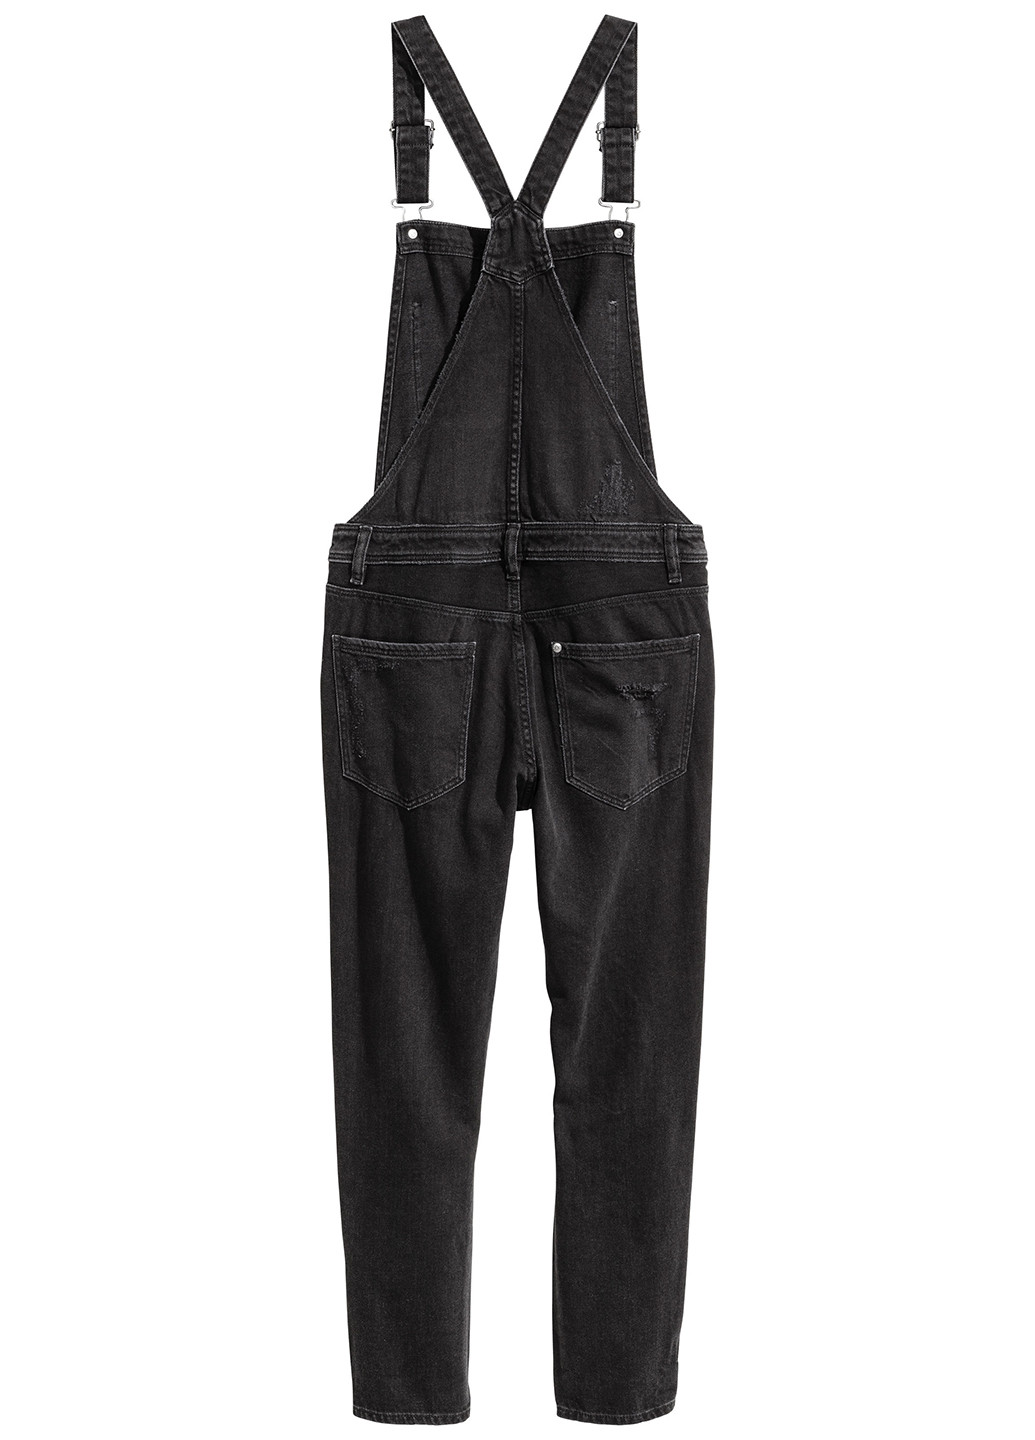 Комбинезон H&M комбинезон-брюки чёрный денил